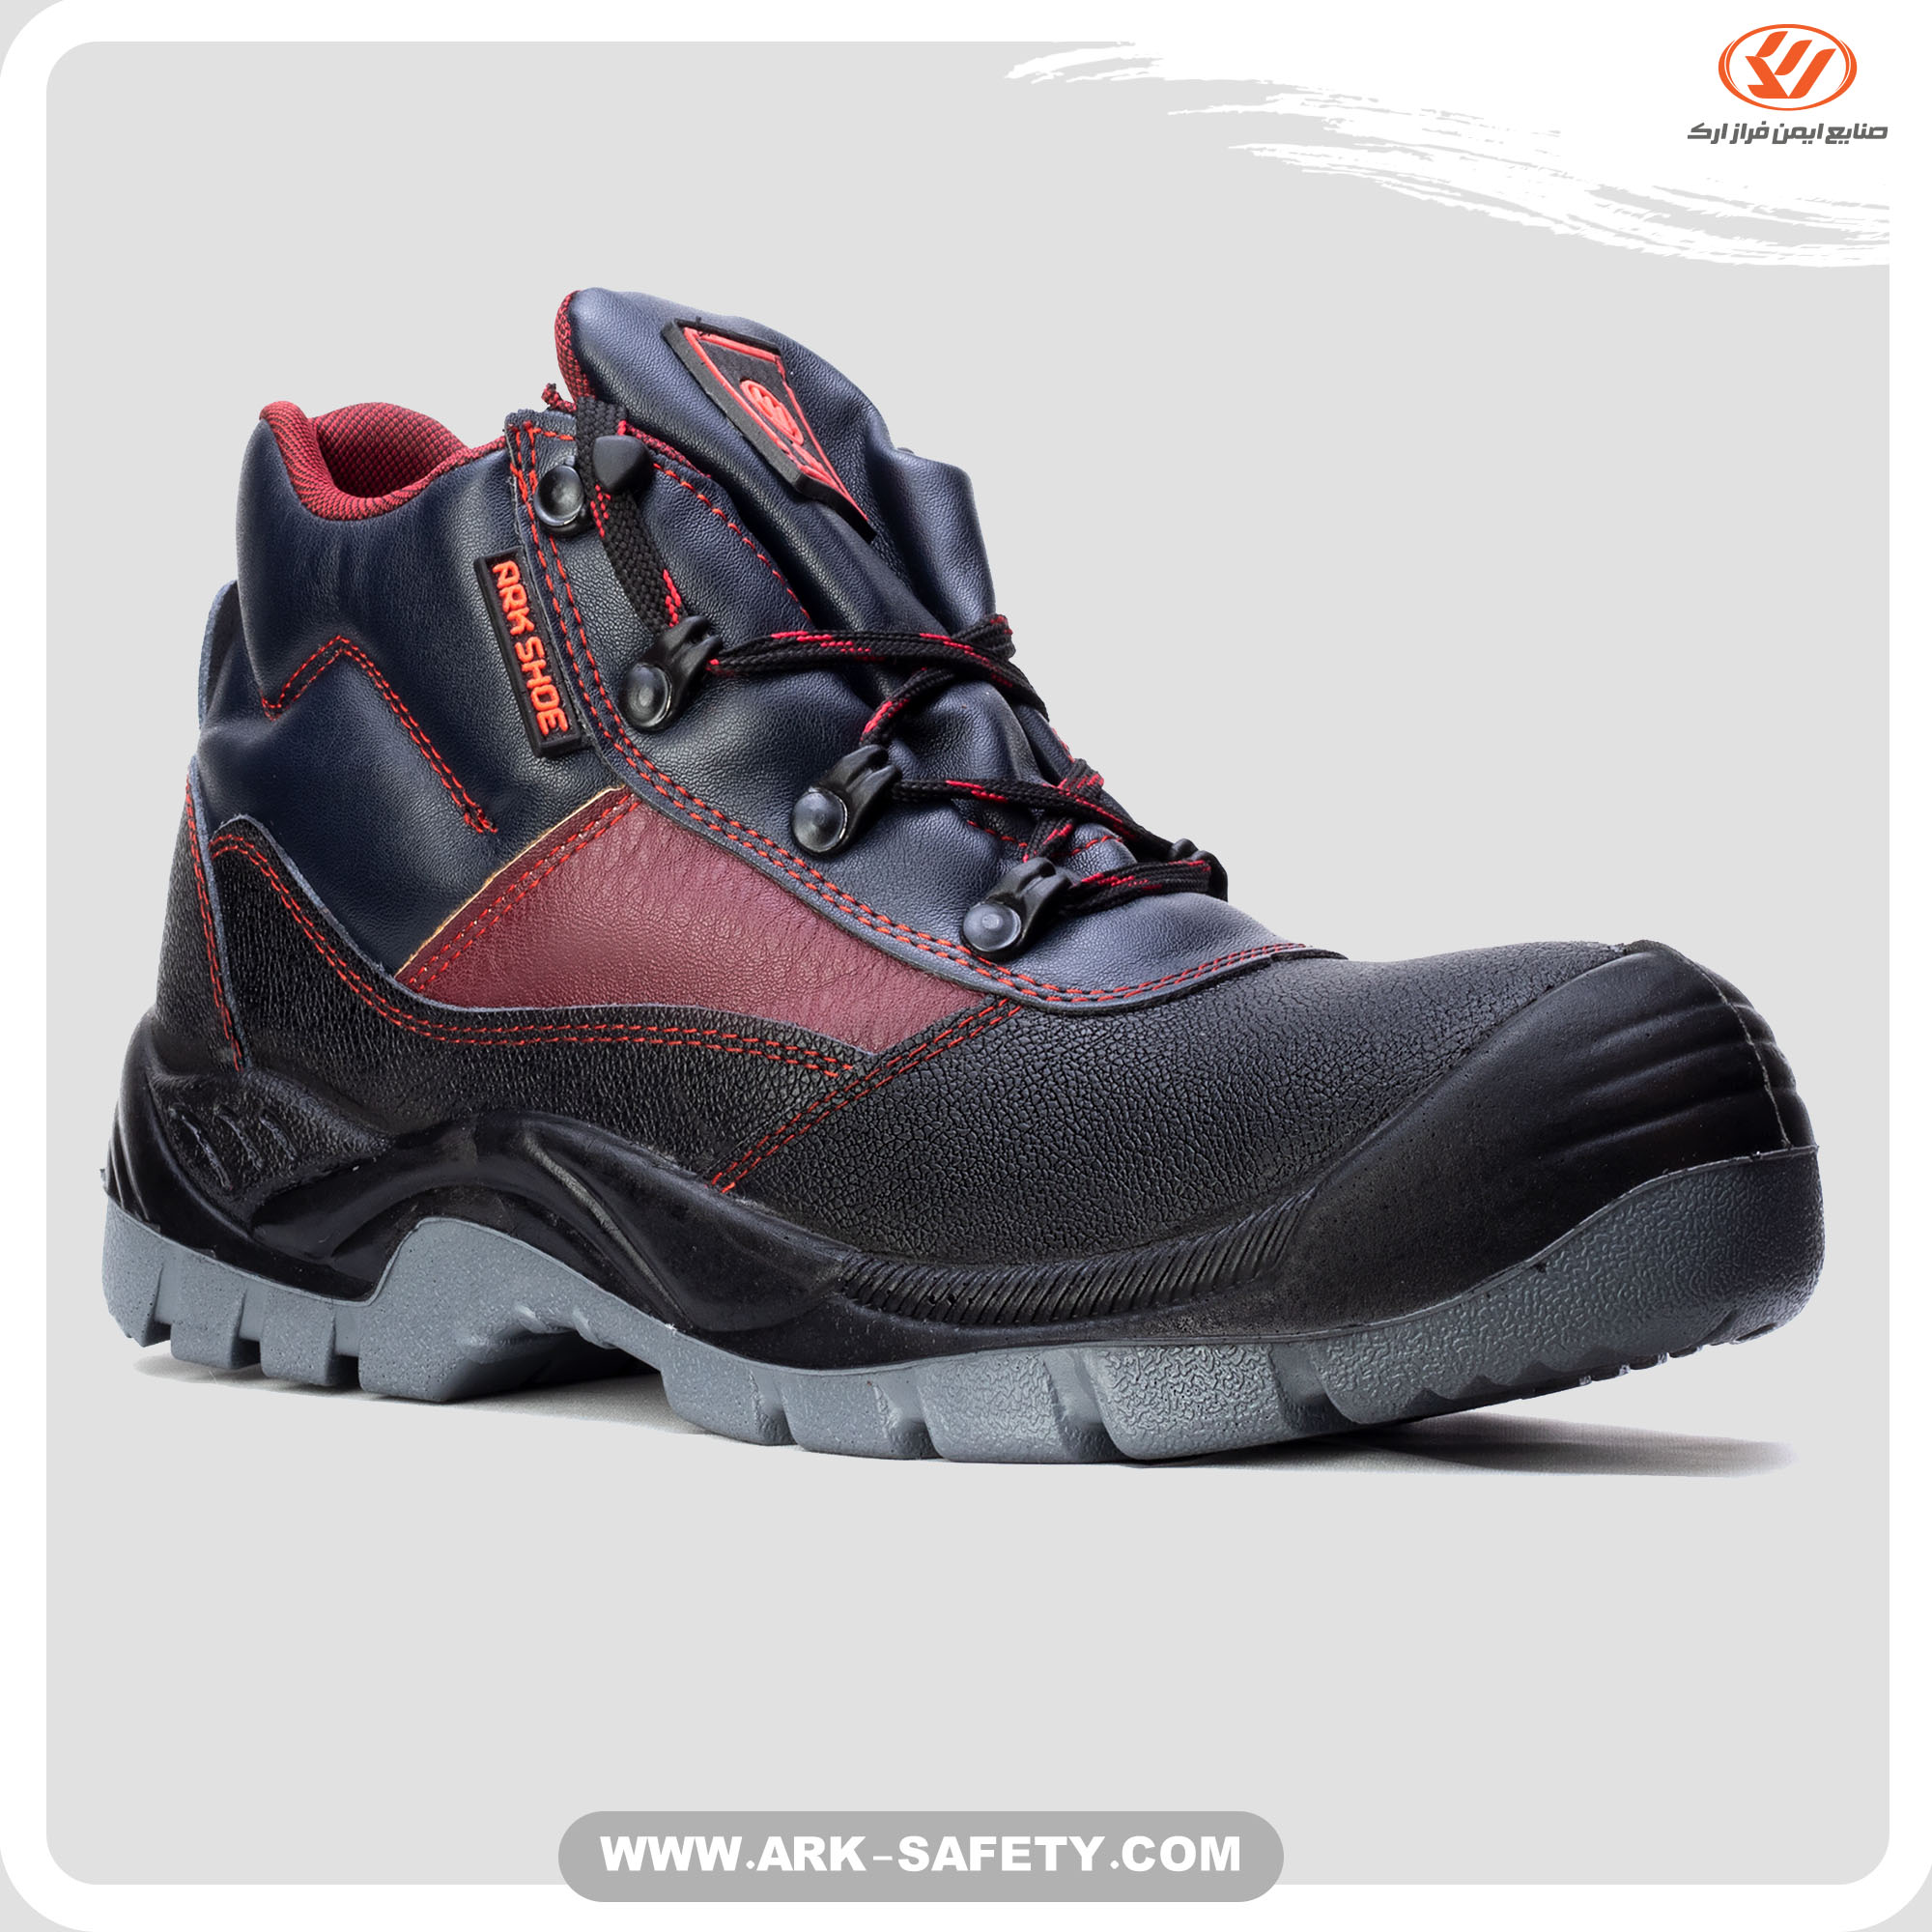 Kara Safety Shoe